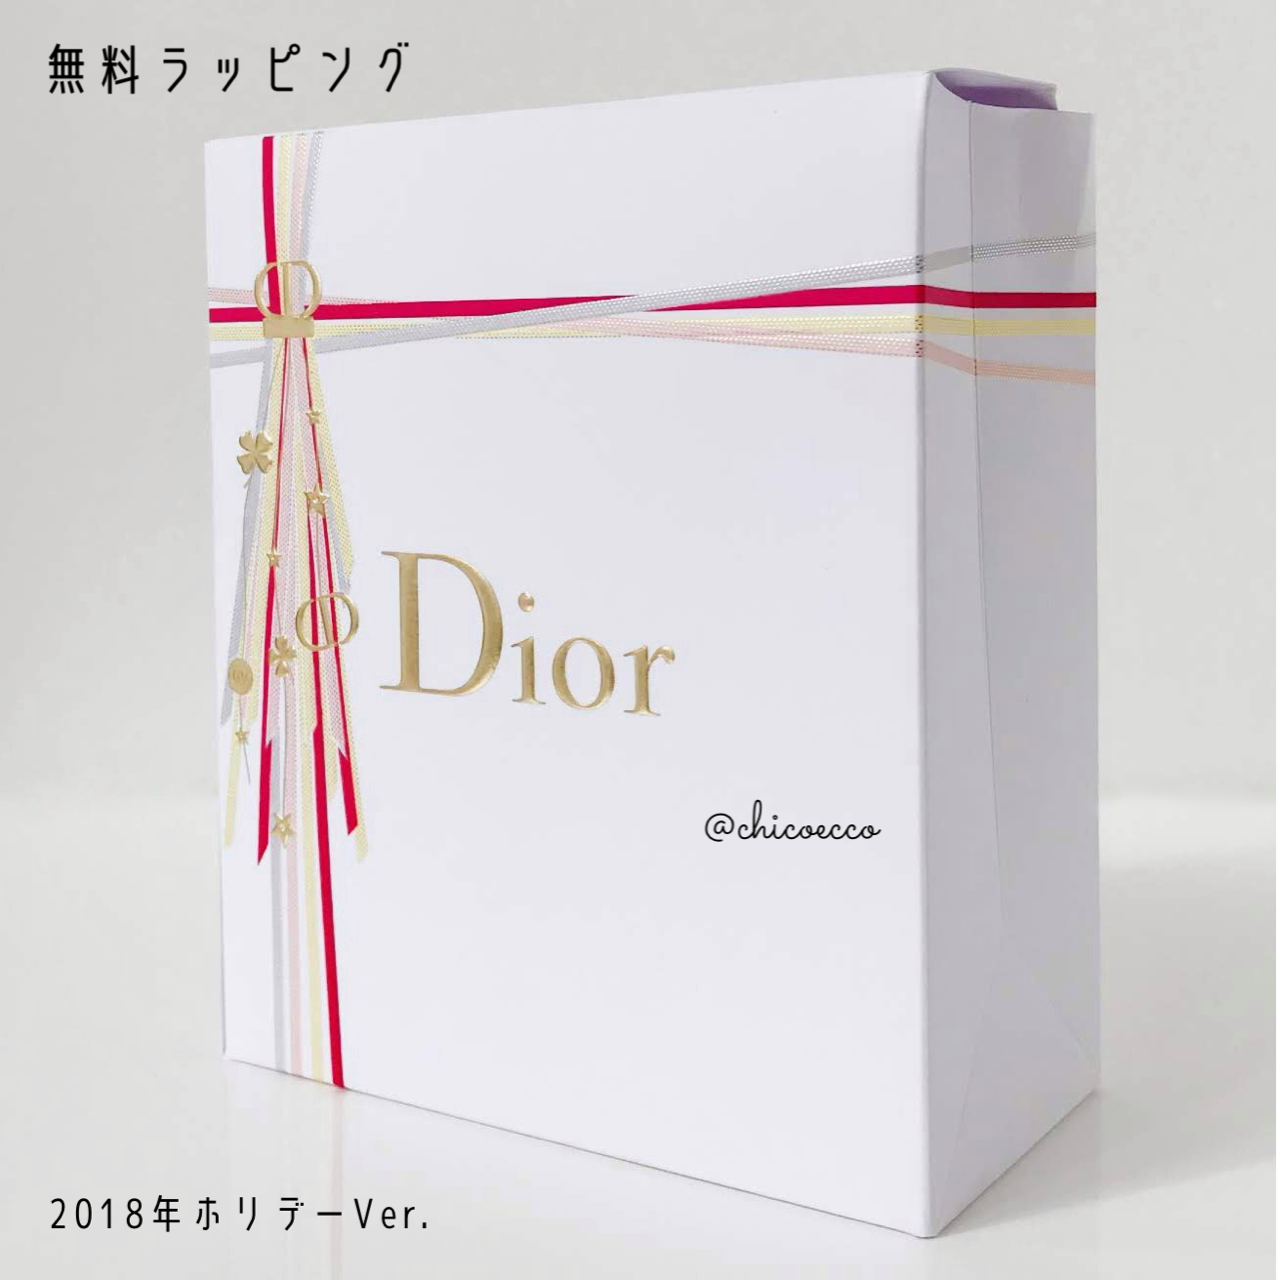 Diorホリデー2021コスメ有料ラッピングはお得？どんな感じ？ : ちこえ official blog Powered by ライブドアブログ